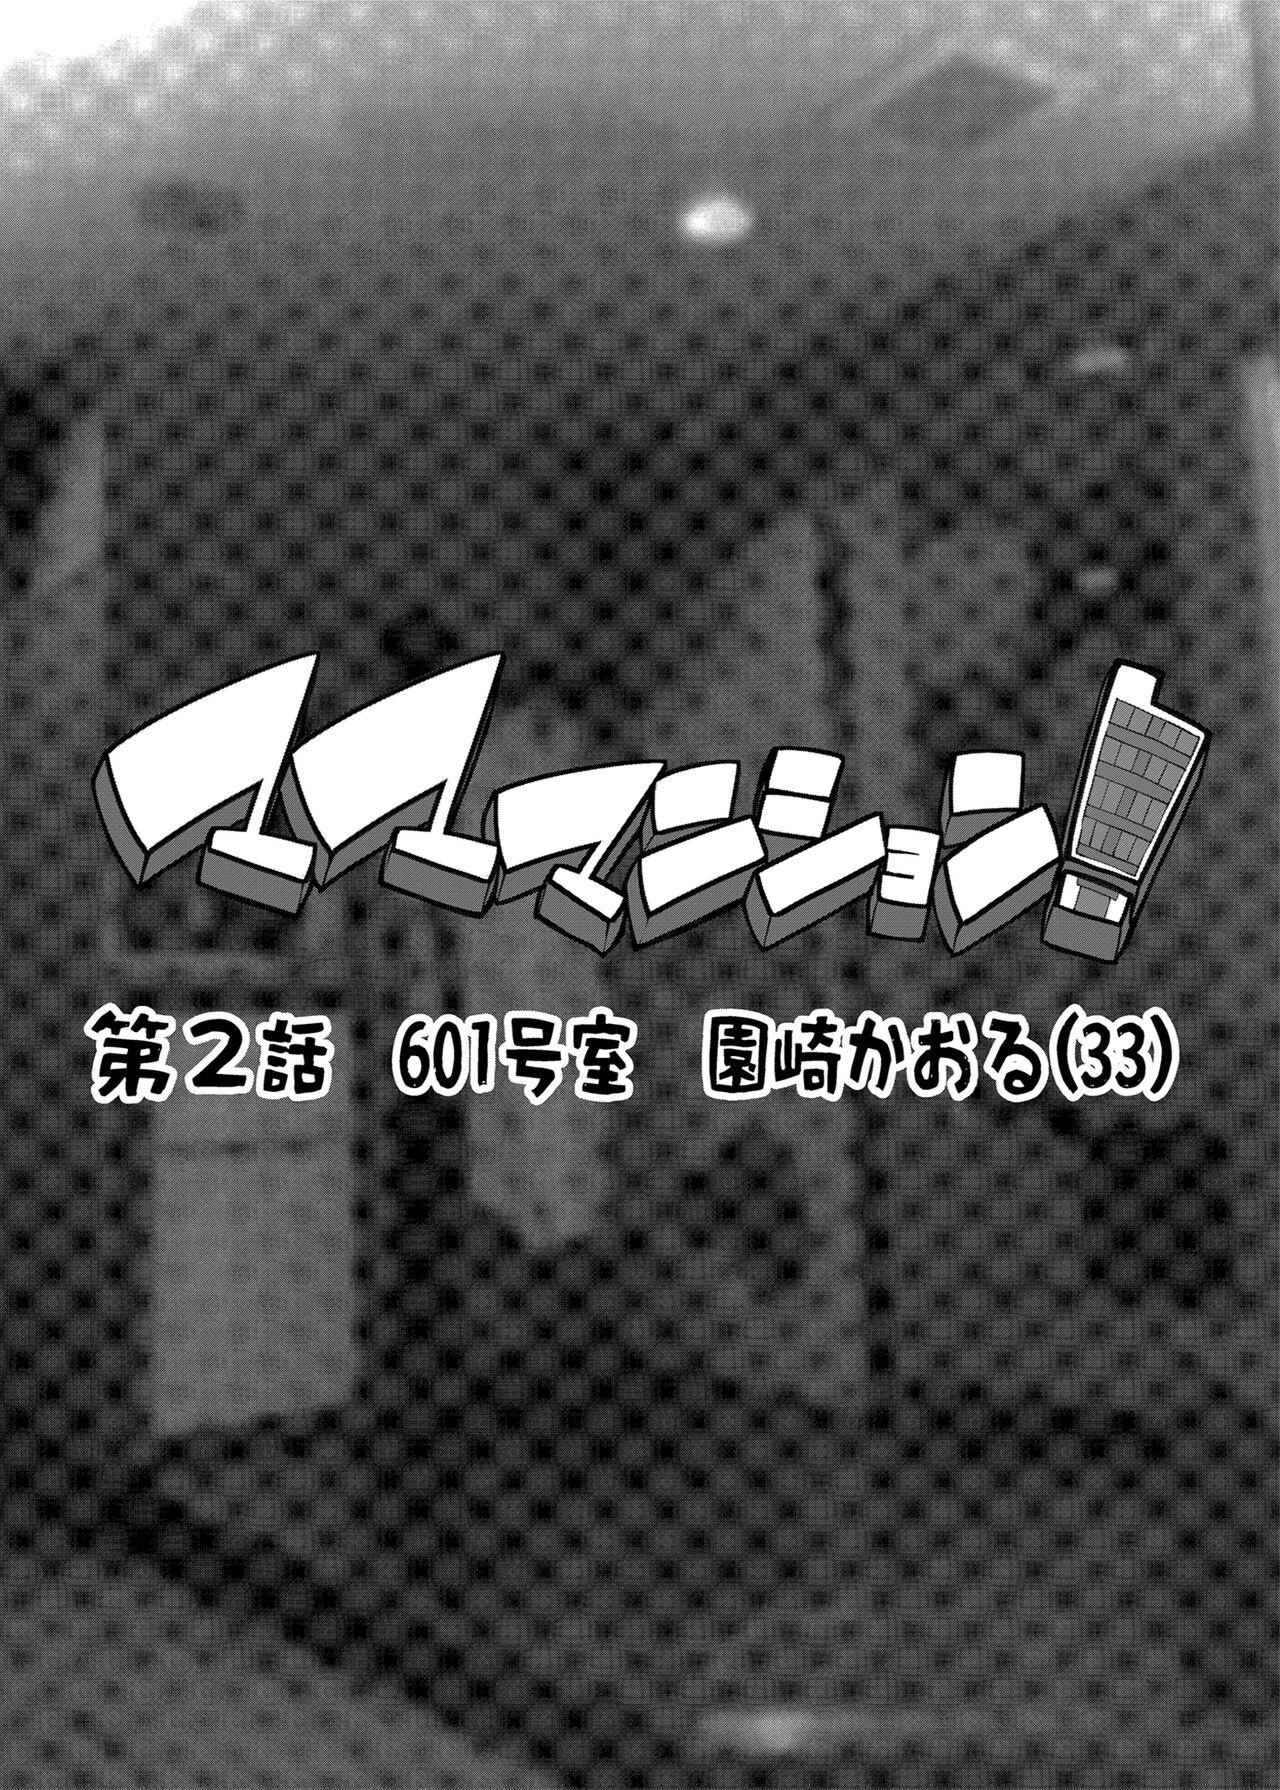 [ERECT TOUCH (Erect Sawaru)] Mama Mansion! Dainiwa 601 Goushitsu Sonosaki Kaoru (33) | Mama Mansion! ~Second Chapter, Room 601's Sonosaki Kaoru 33YO~ [English] {Doujins.com} [Digital] 2